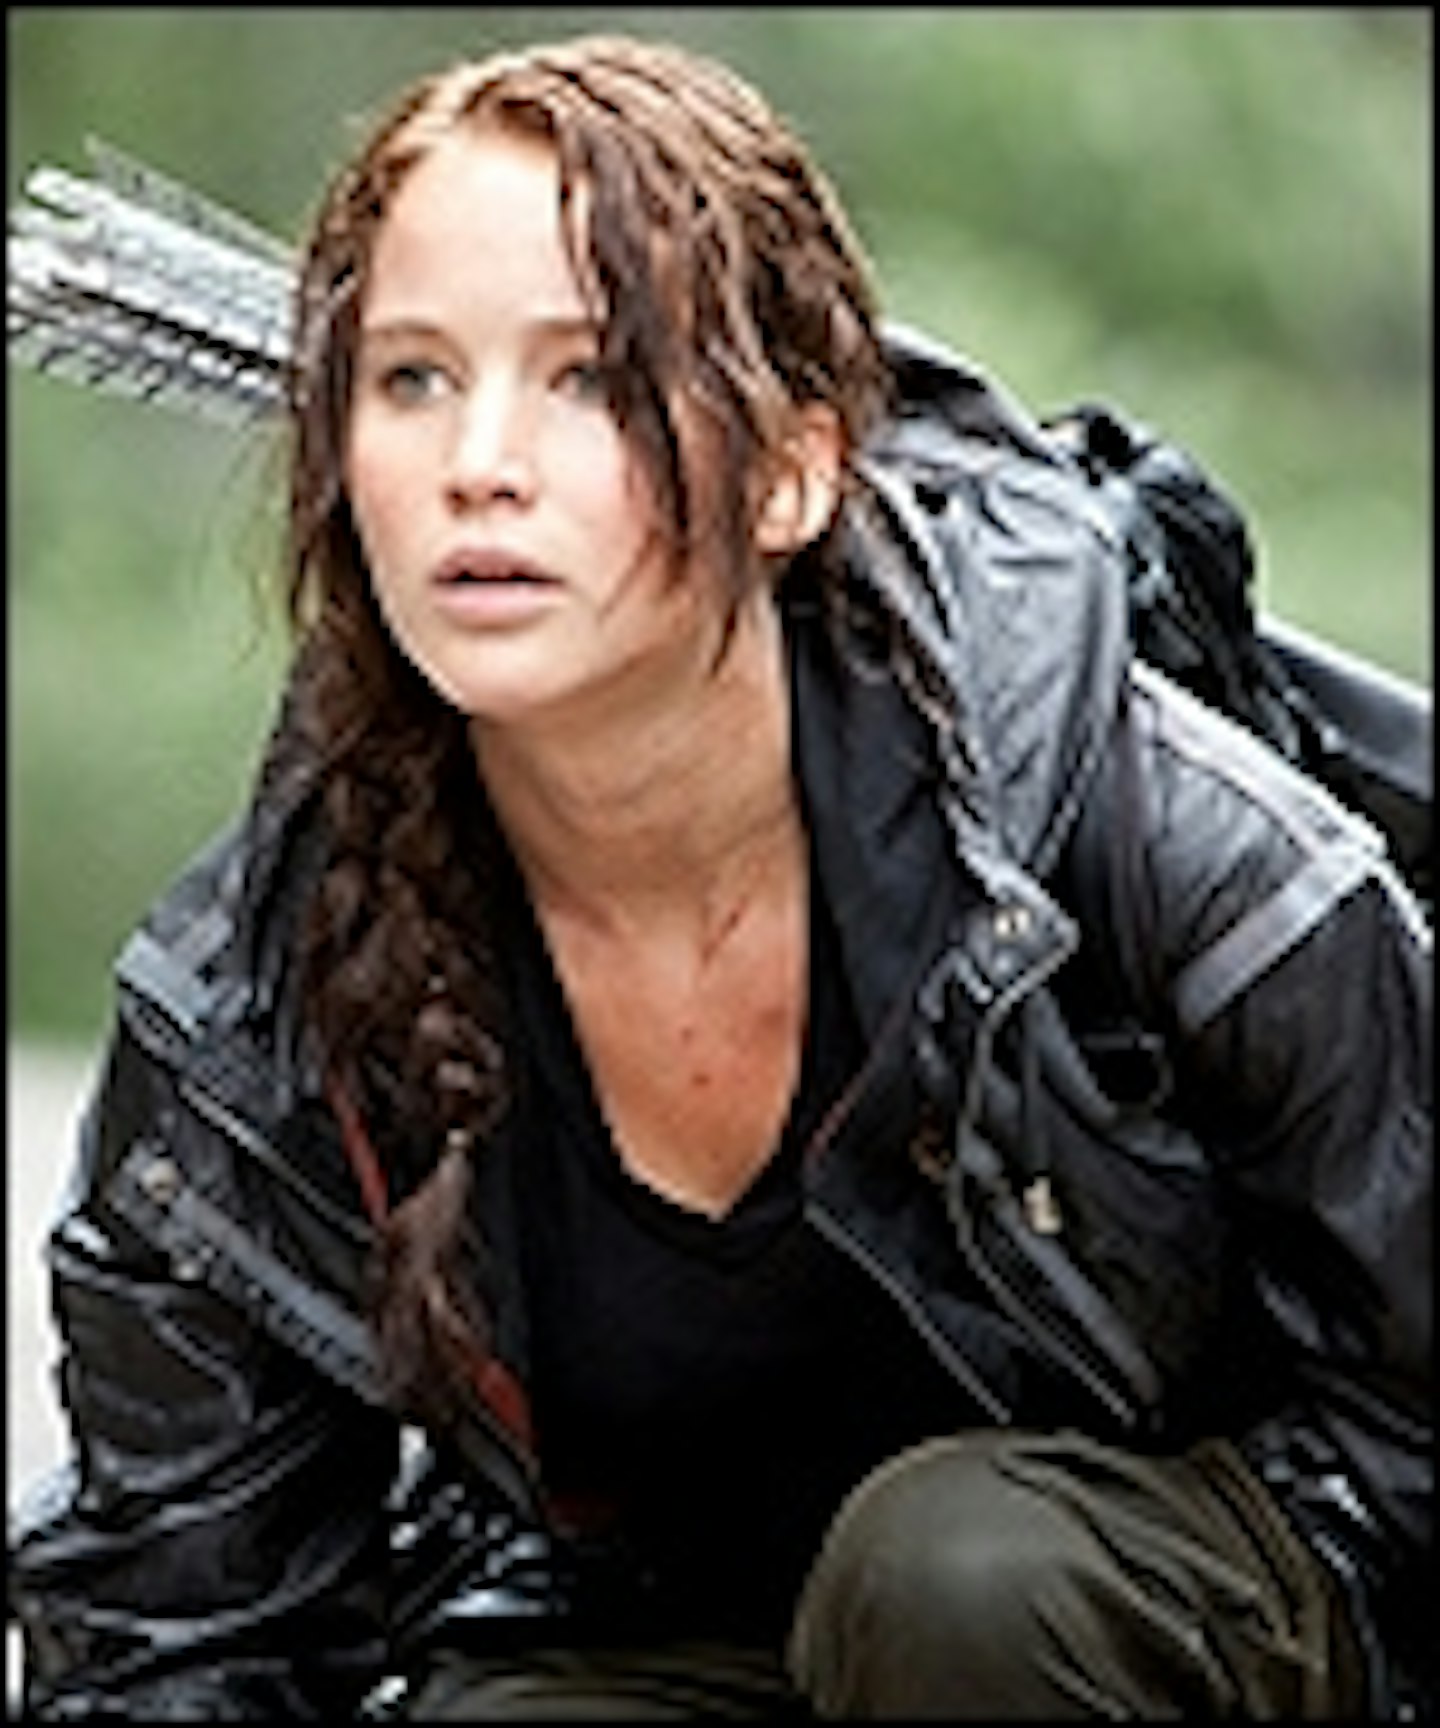 Hunger Games Sequel Set For 2013